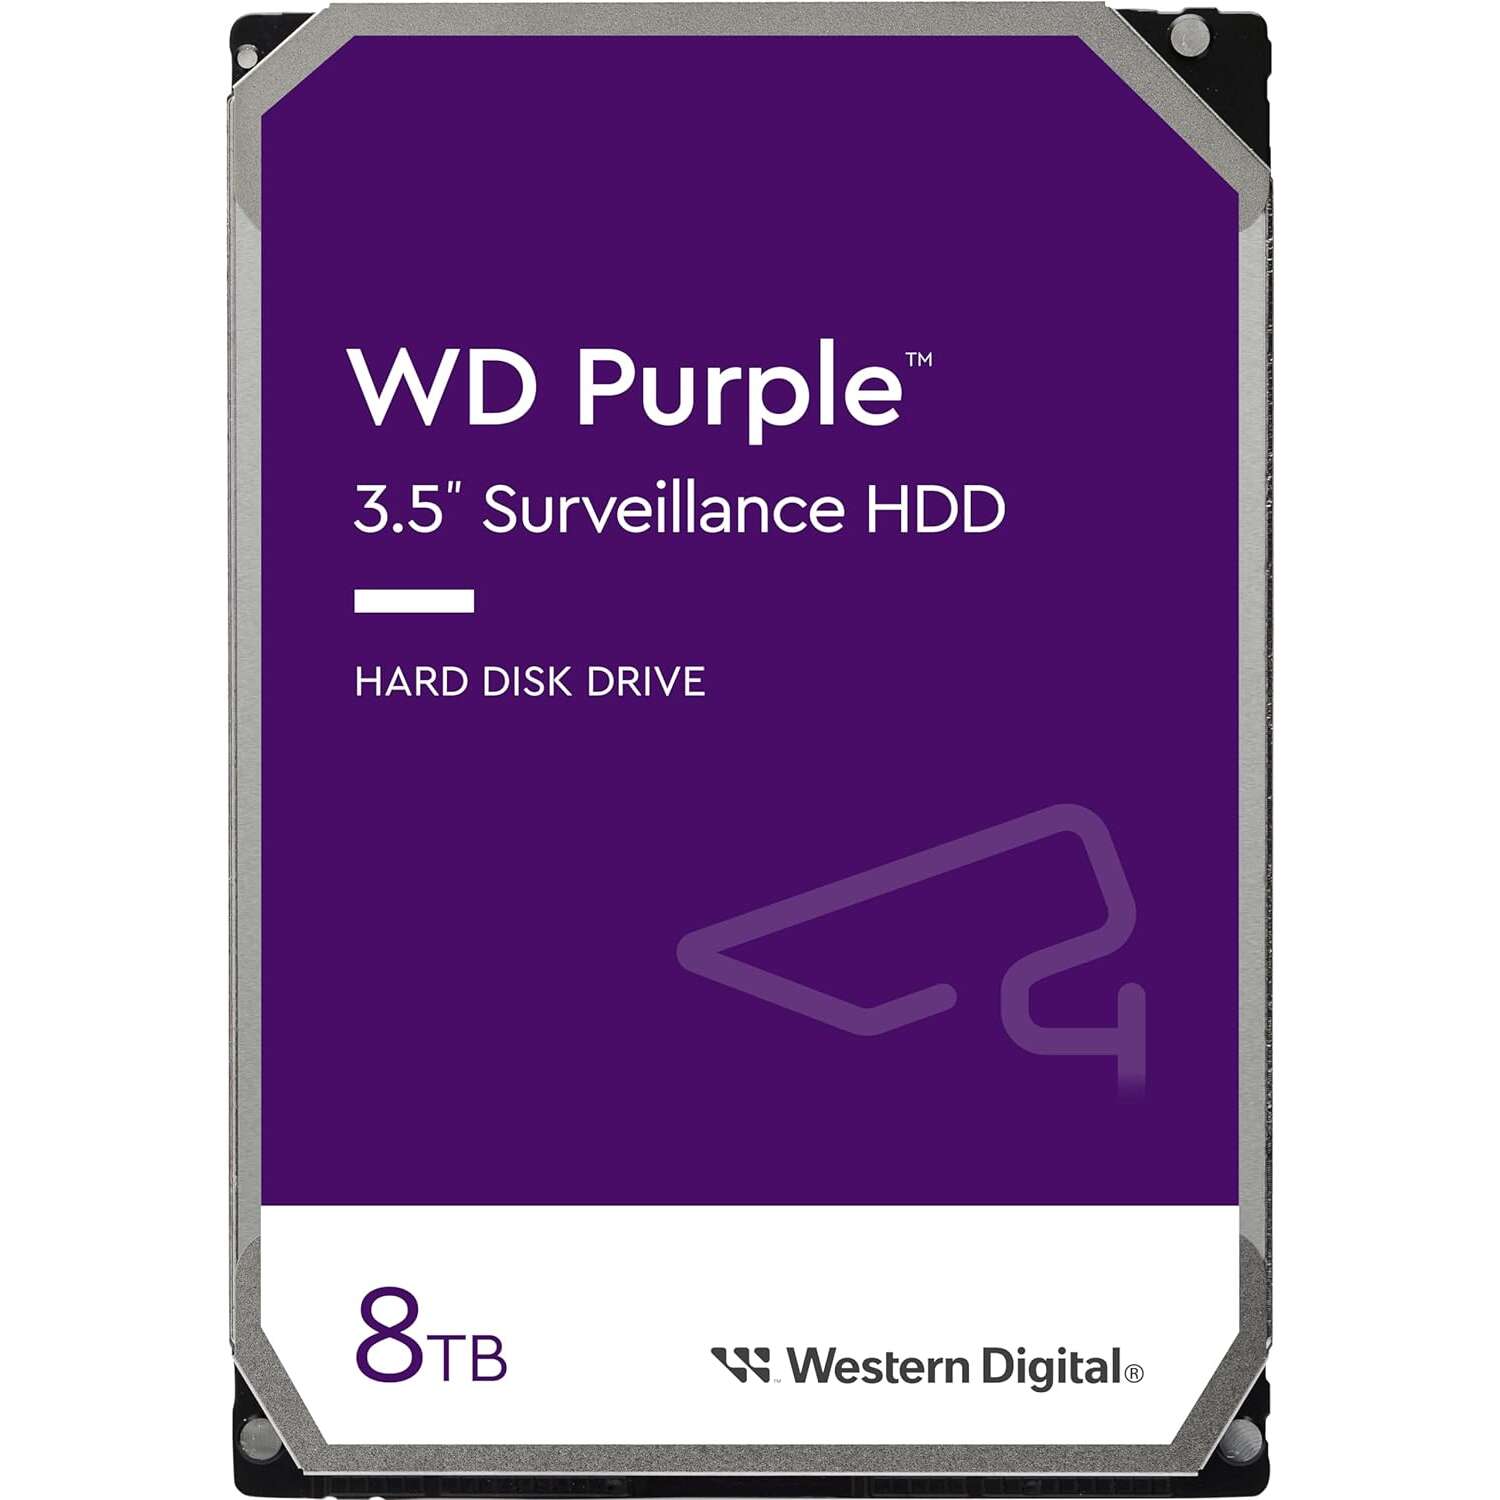 Western digital 8tb purple sata3 3.5" dvr hdd (wd85purz)